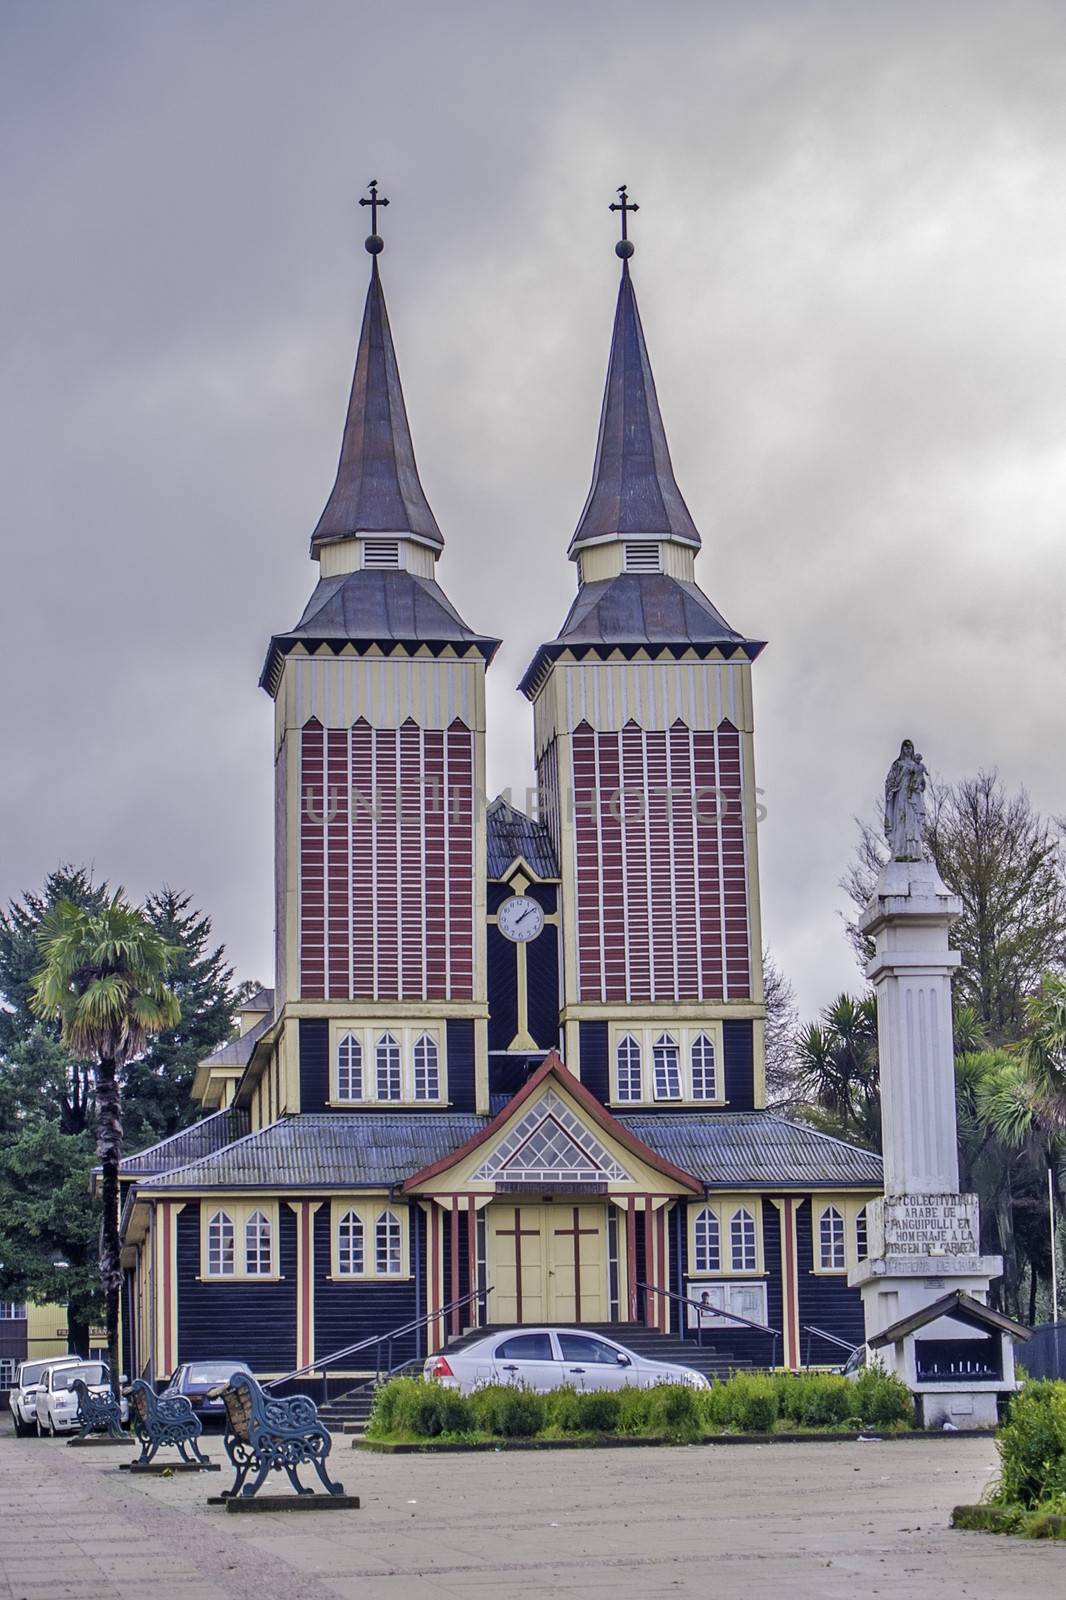 Panguipulli, June 2013. Double tower church of Panguipulli in Chilean Patagonia.